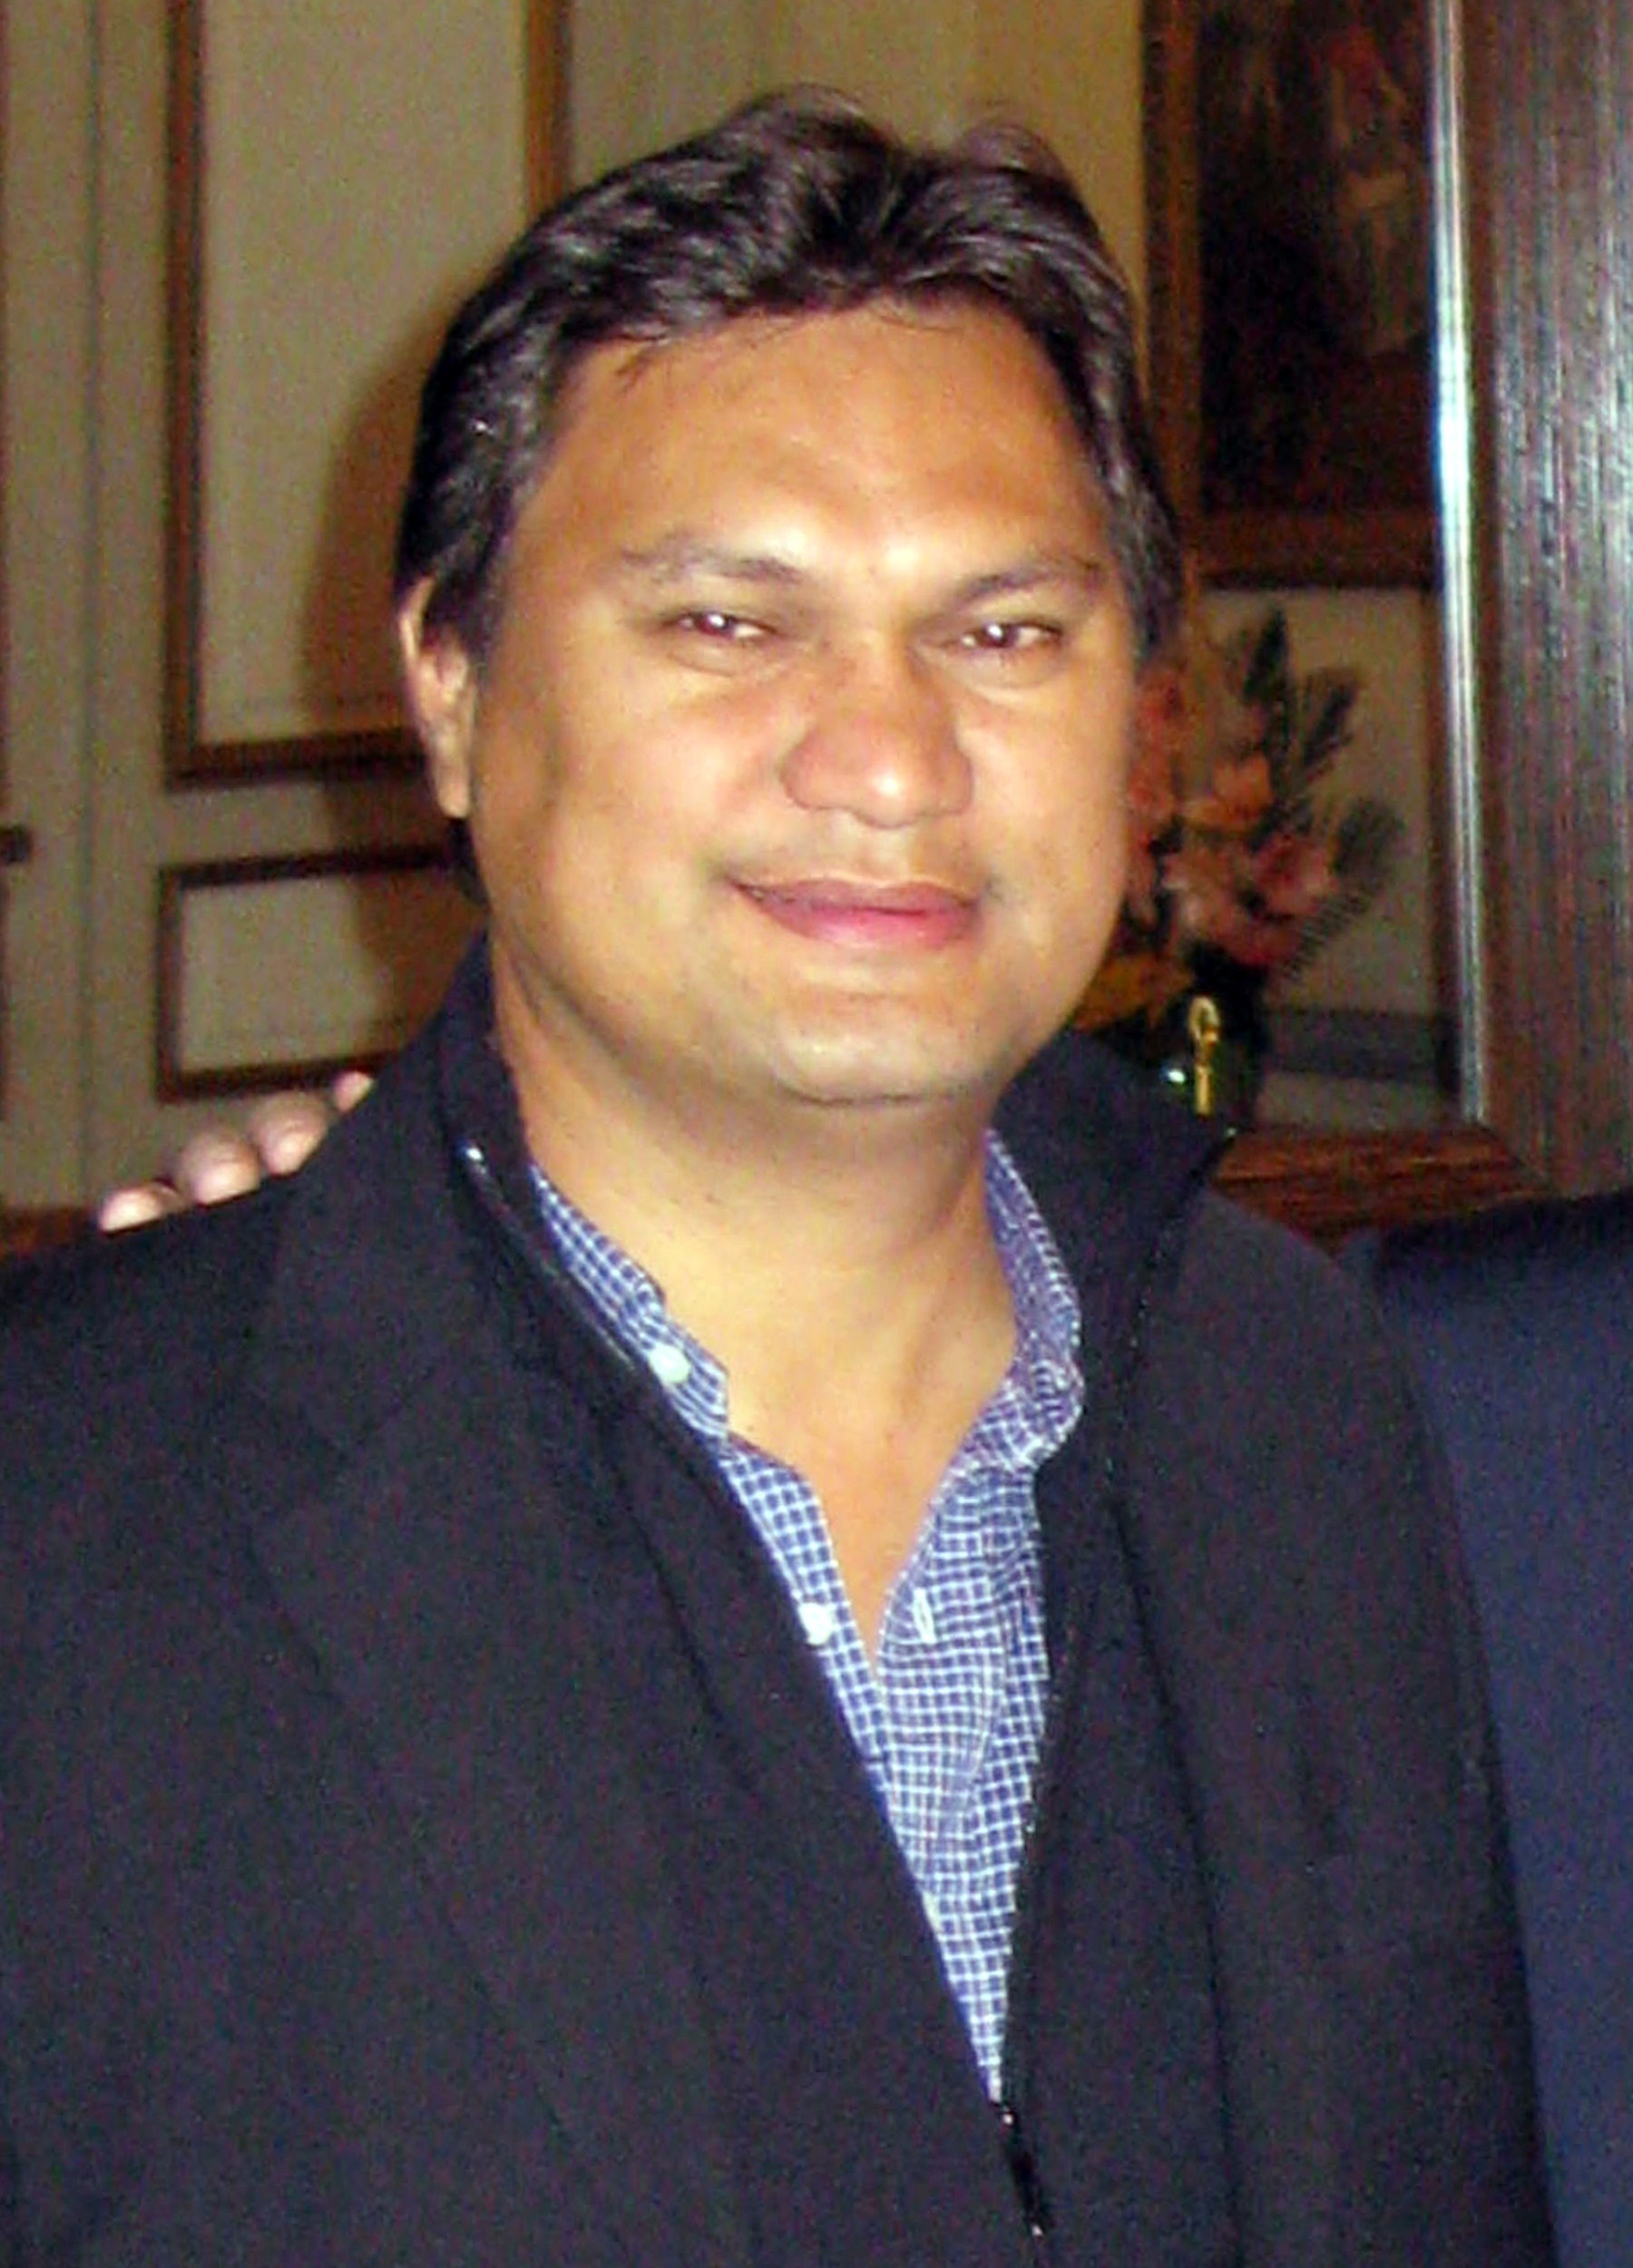 Reynald Temarii, en una imagen de 2008.